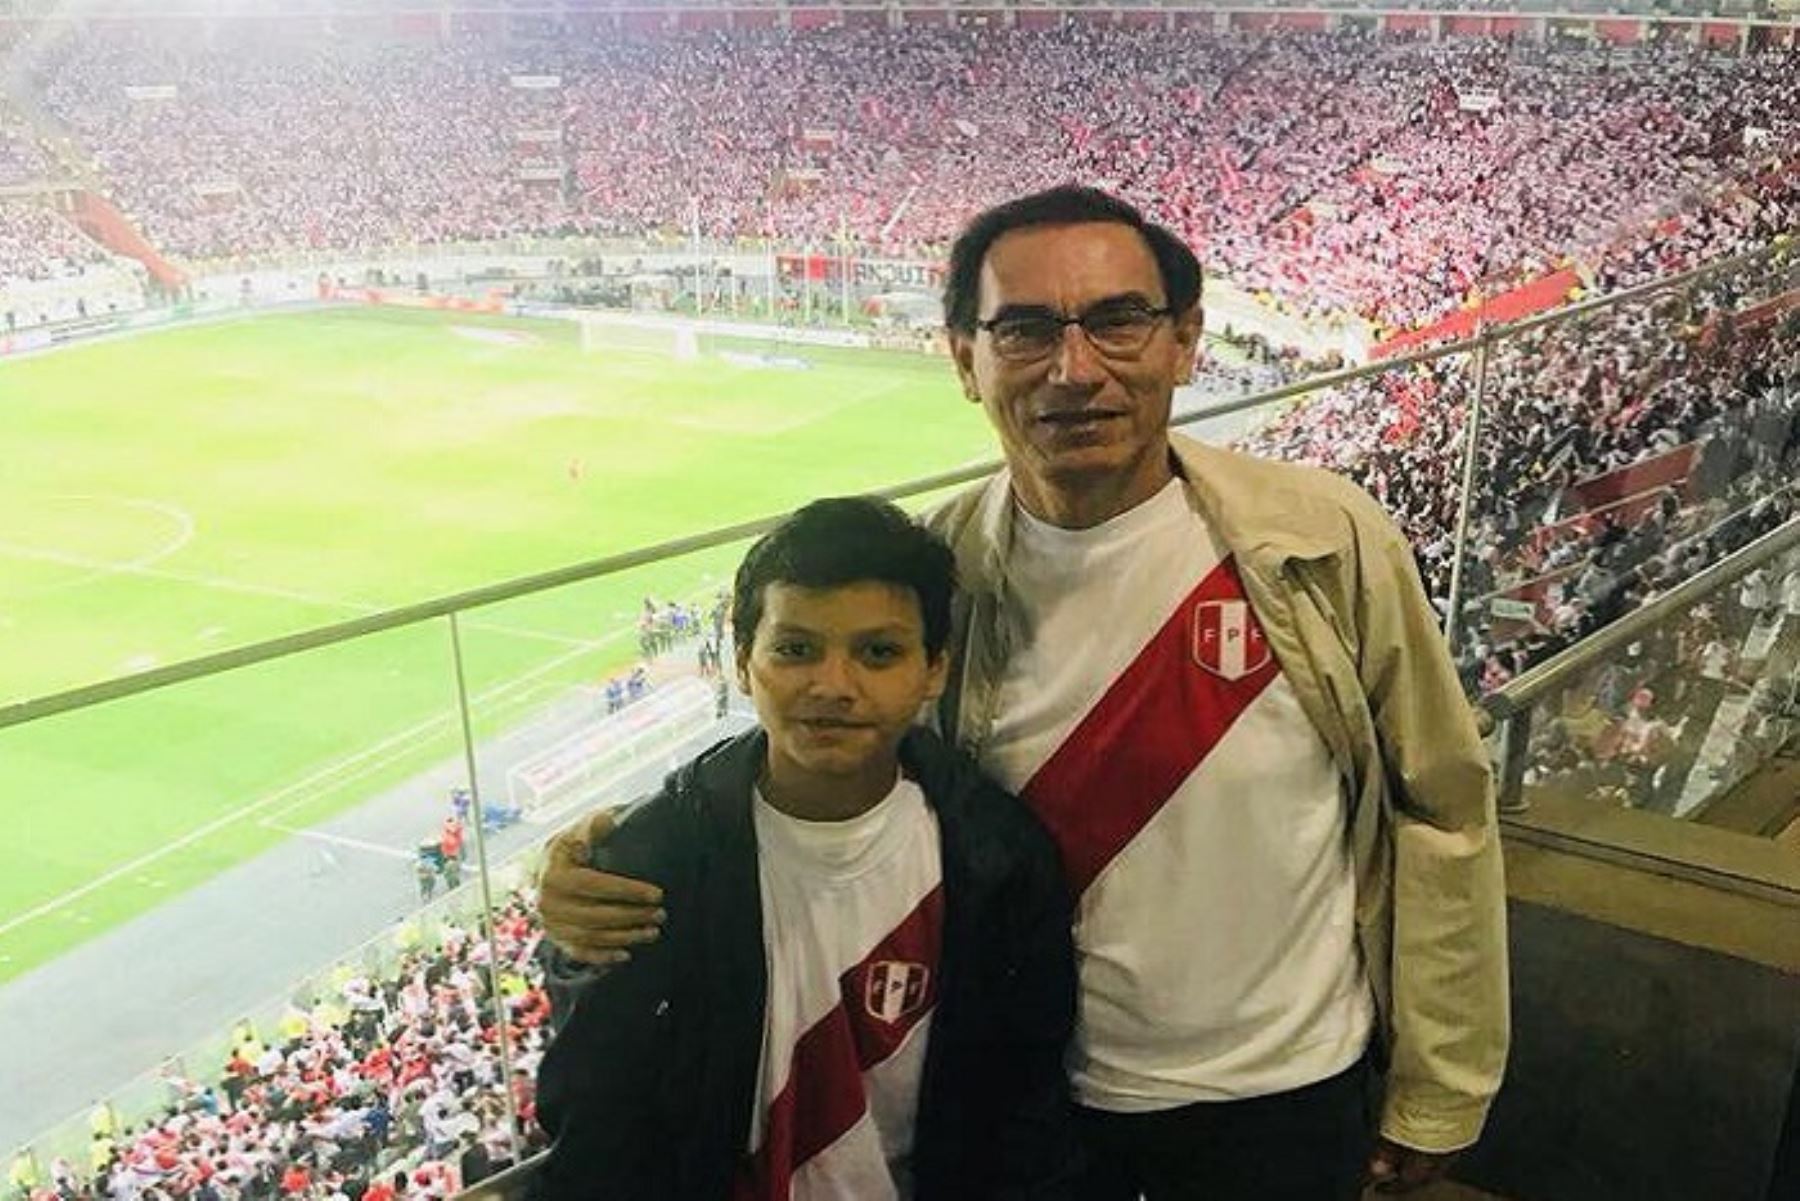 Presidente Martín Vizcarra también asistió al estadio a alentar a la selección peruana de fútbol. Foto: ANDINA/archivo